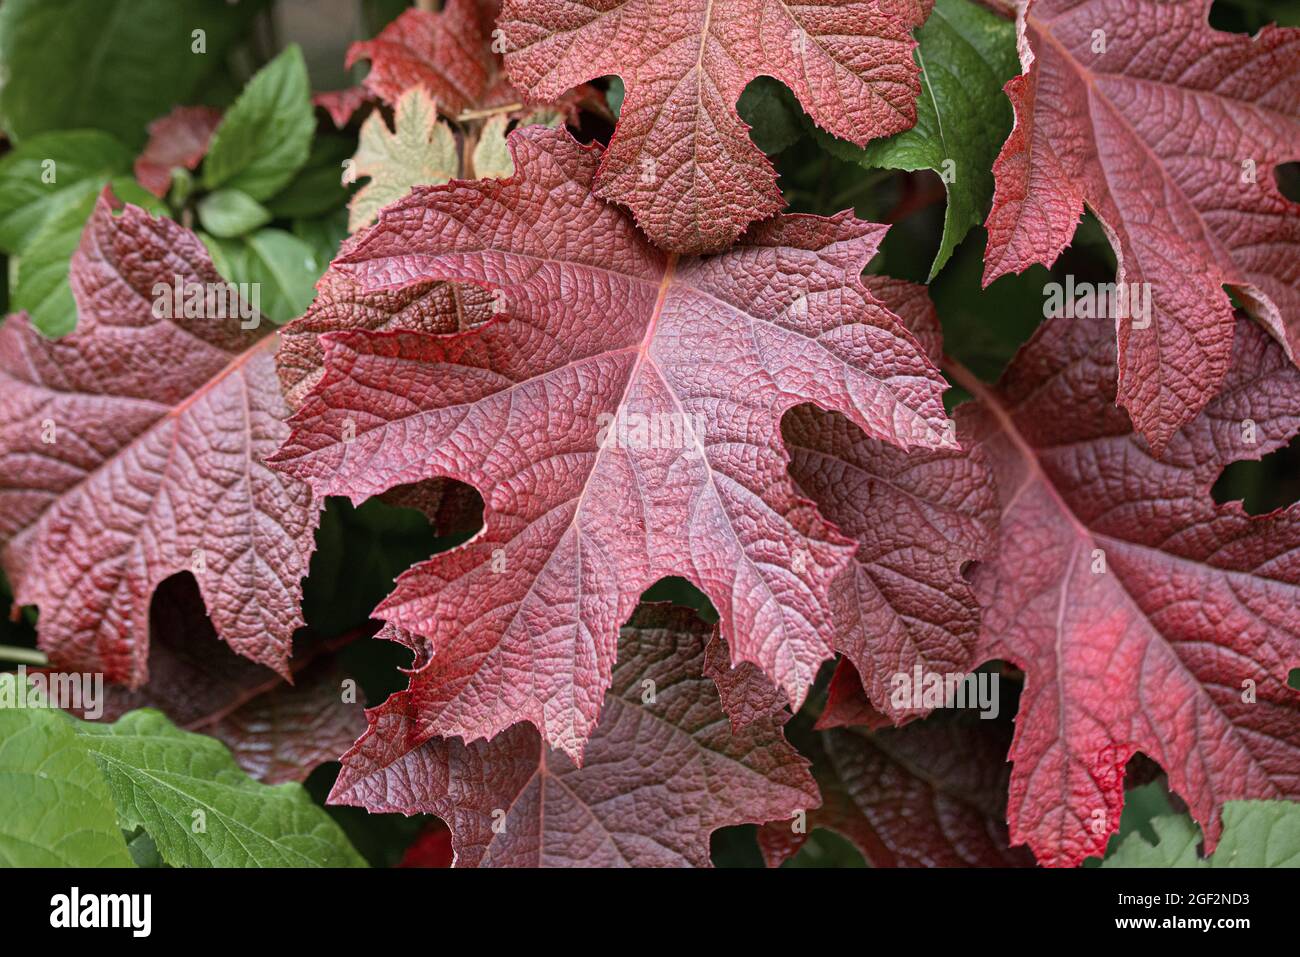 Hydrangea à feuilles de chêne (Hydrangea quercifolia 'Ruby chaussons', Hydrangea quercifolia Ruby chaussons), feuilles de rotoculteur Ruby chaussons à Autum, Allemagne Banque D'Images